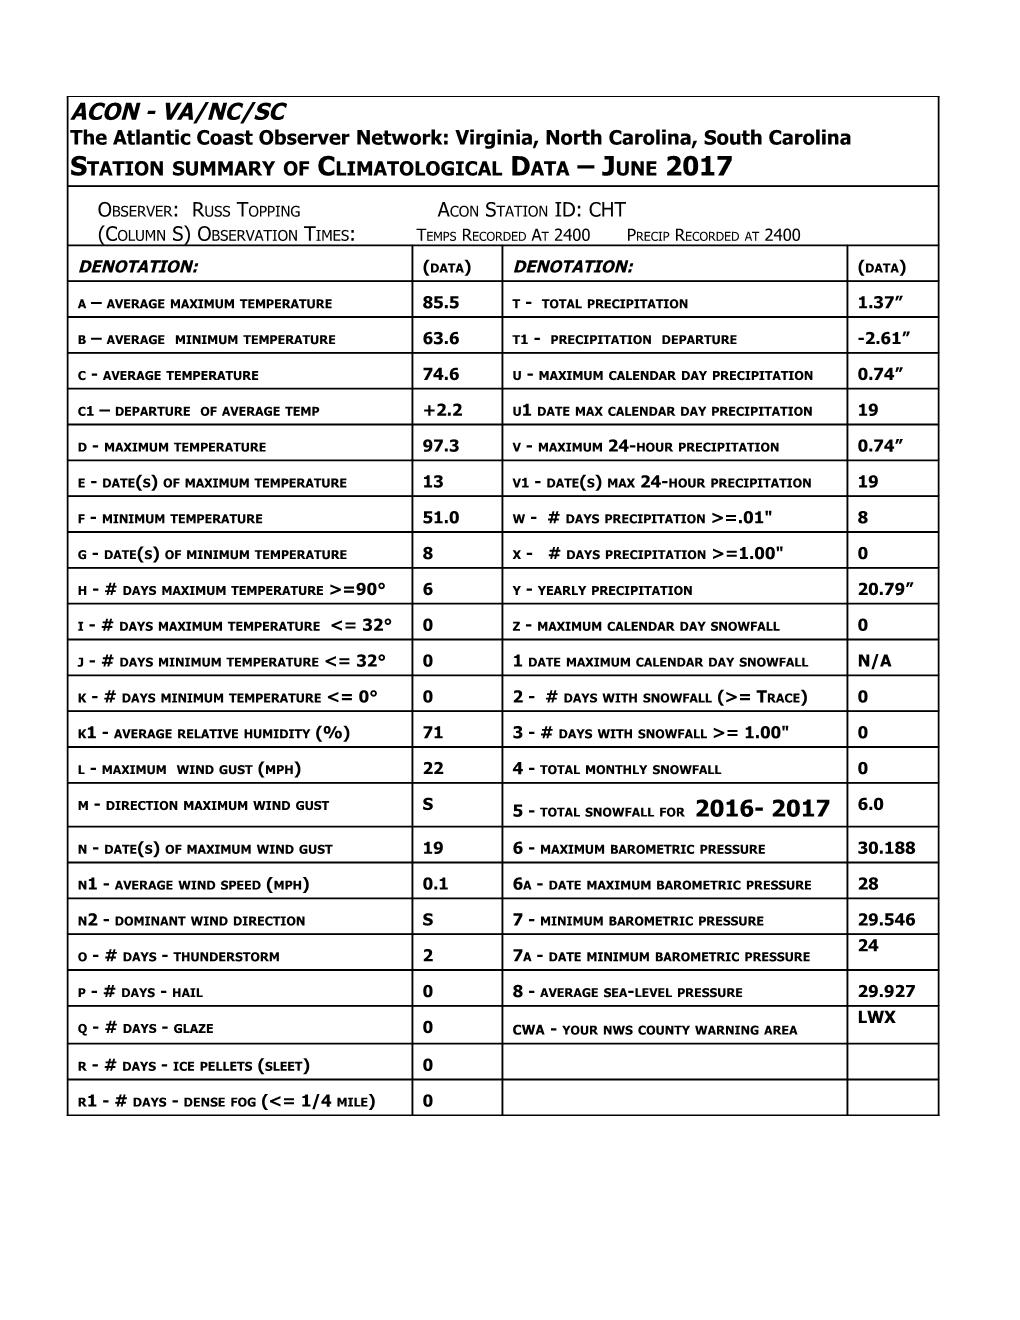 Station Summary of Climatological Data June 2017